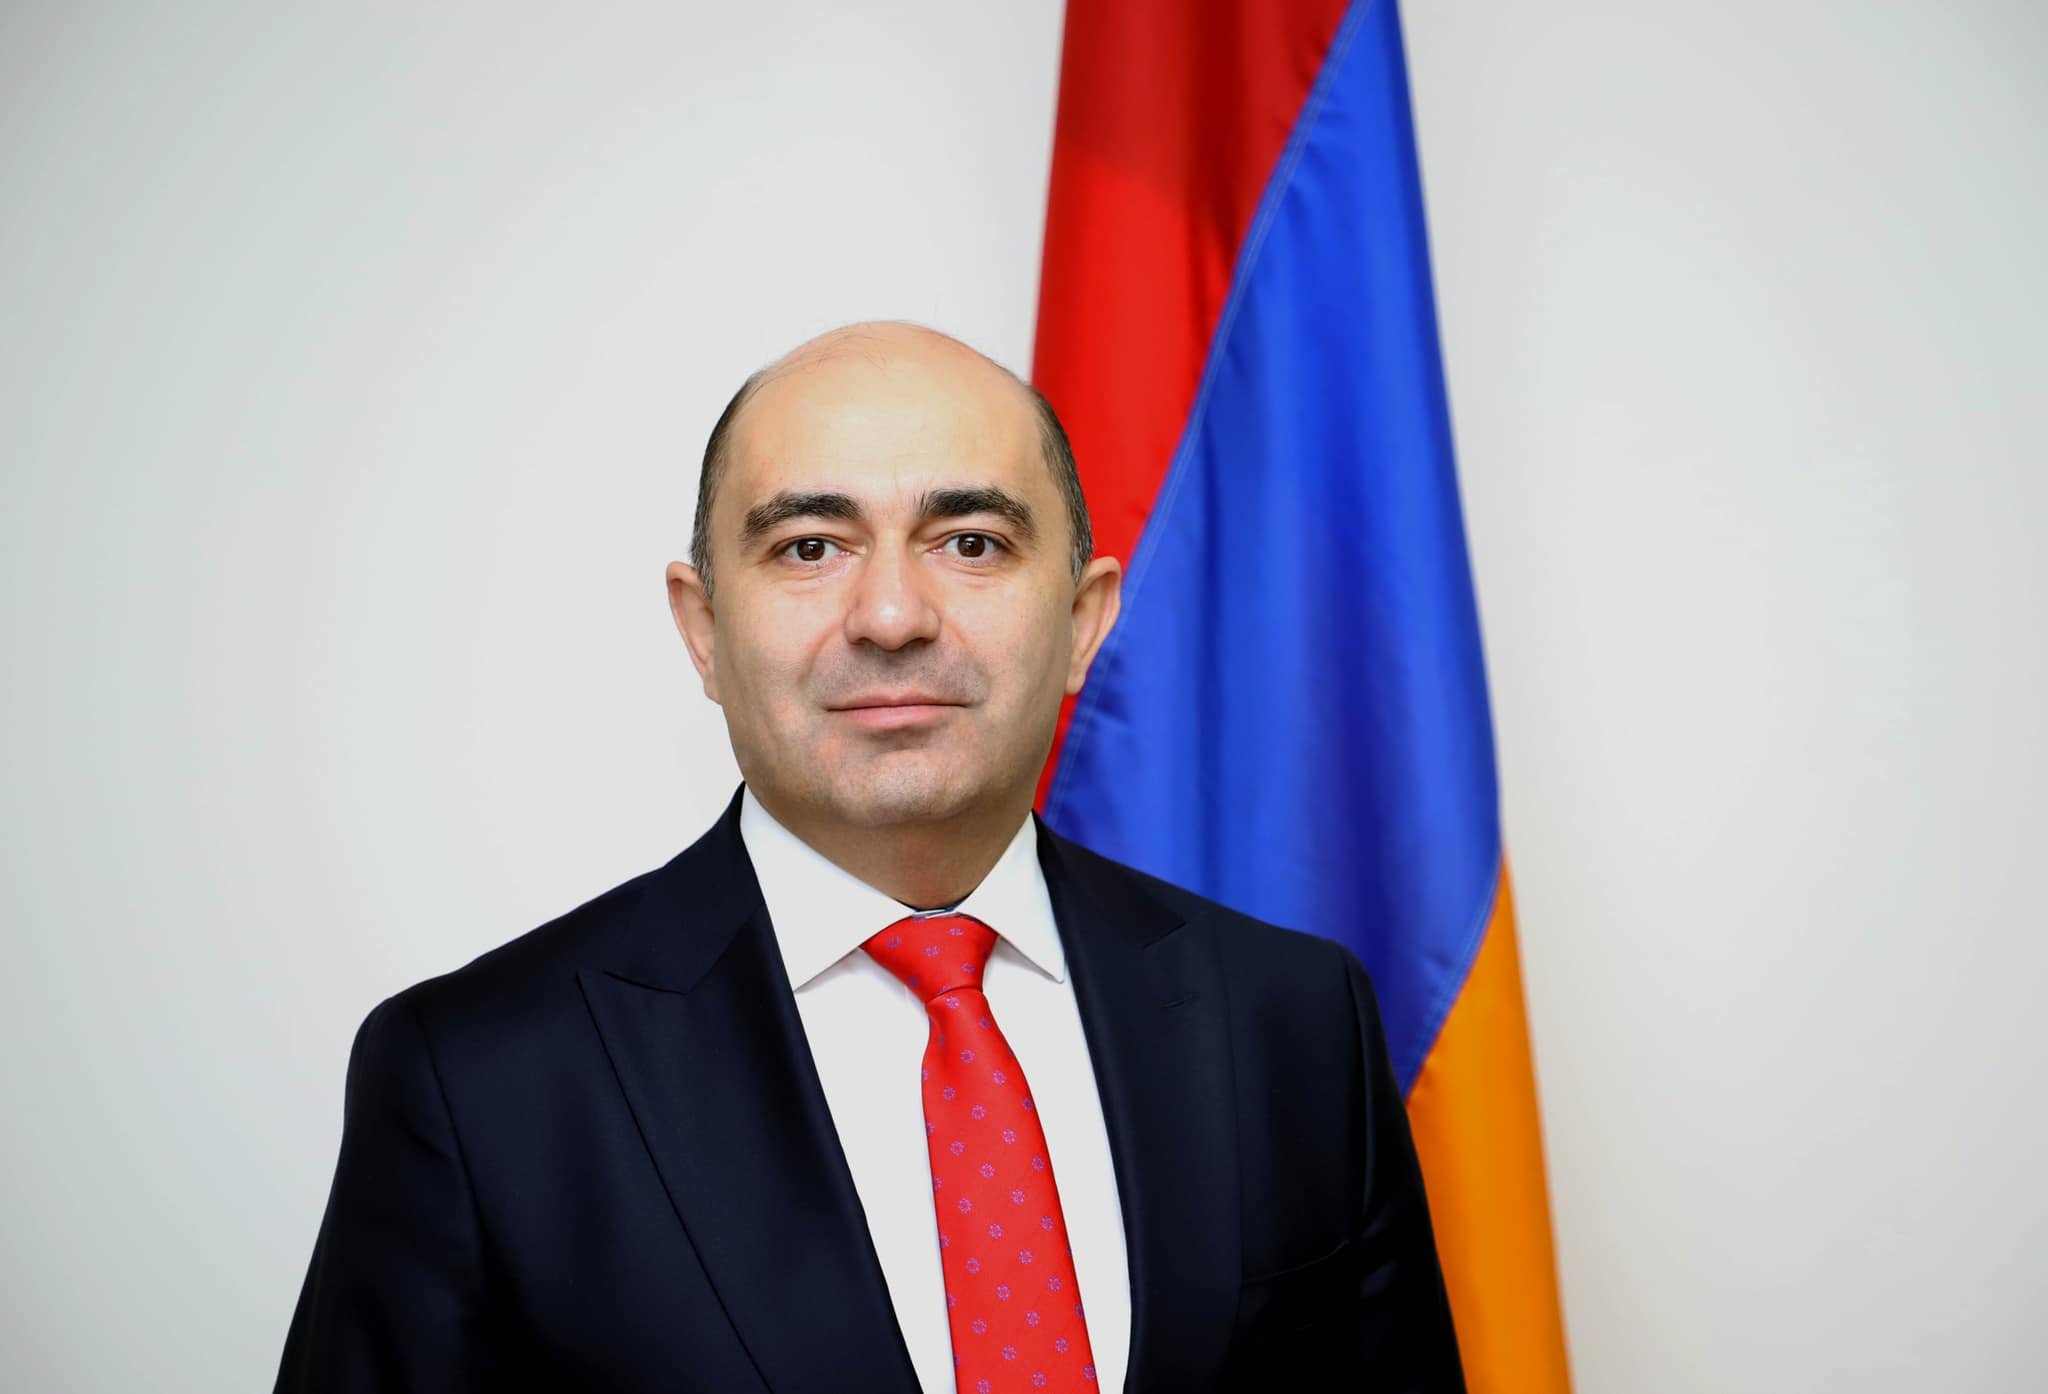 Ո՞րն է այն երաշխիքը, որ Ադրբեջանը չի խախտի ապագա խաղաղության պայմանագիրը․ Հայաստանին խաղաղության պայմանագրի երաշխավորներ են պետք, առնվազն ՄԱԿ-ի ԱԽ մշտական անդամներից․ Մարուքյան